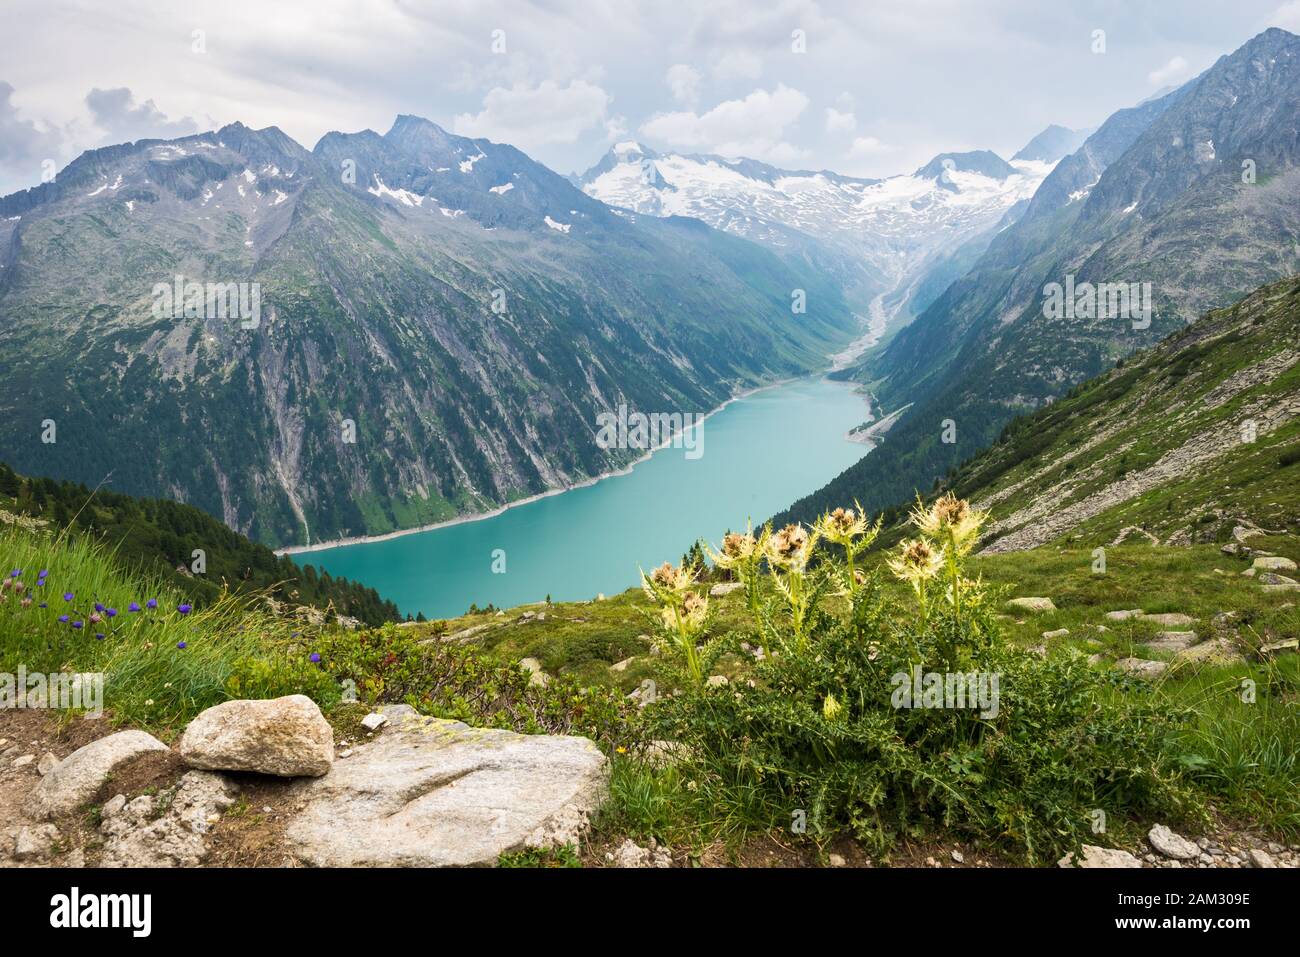 Vue panoramique d'une belle couleur bleu glacier lac dans les Alpes avec des fleurs jaunes à l'avant-plan Banque D'Images